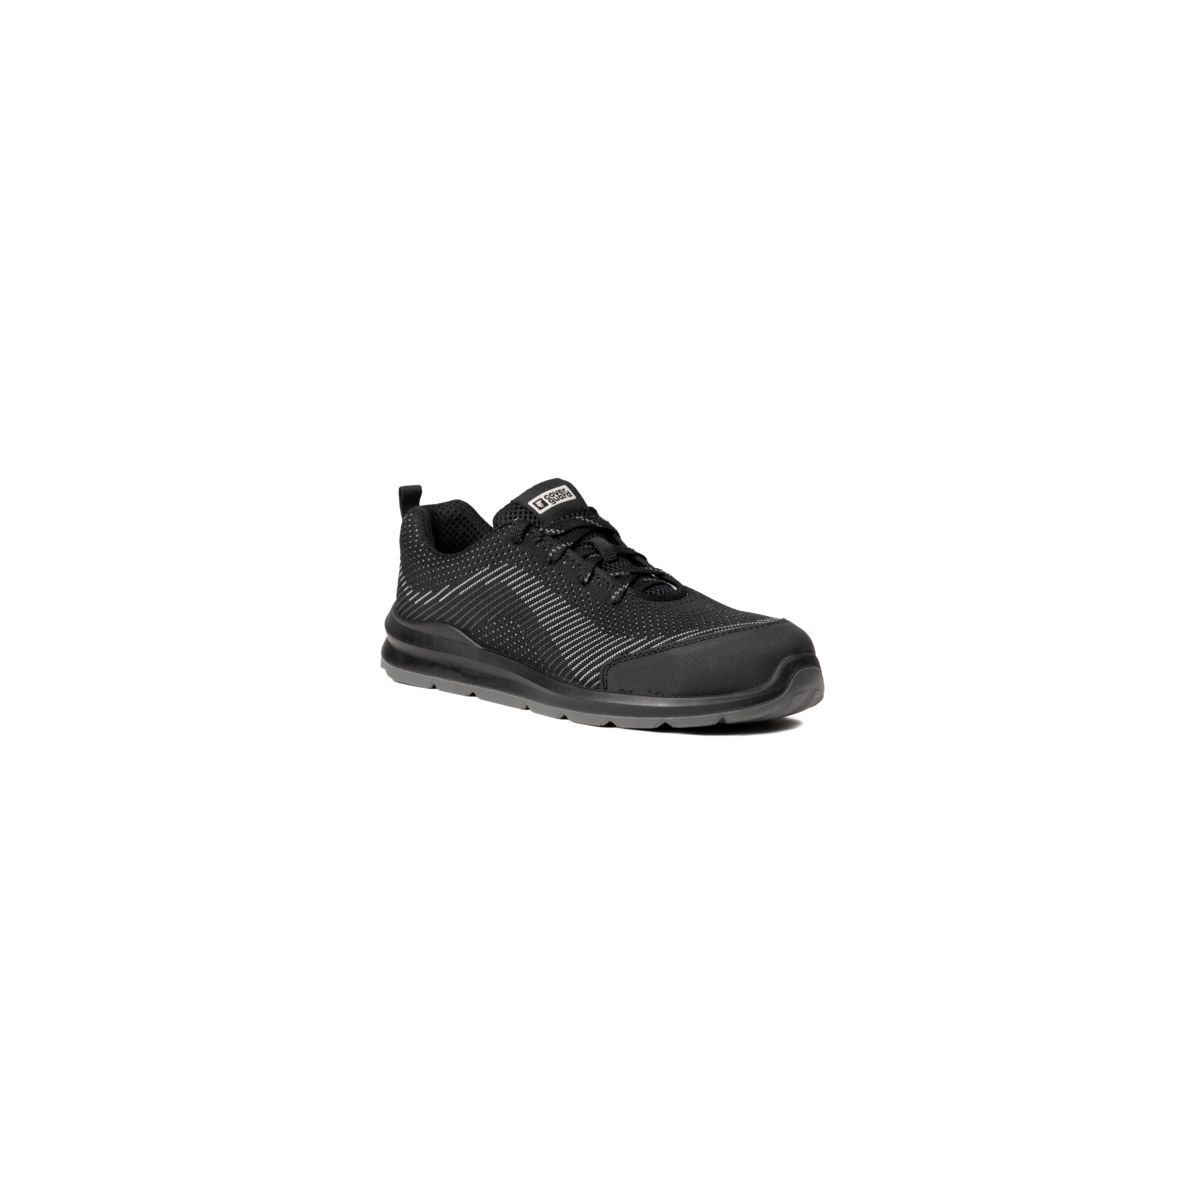 Chaussures de sécurité MILERITE S1P Basse Noir/Gris - COVERGUARD - Taille 38 0